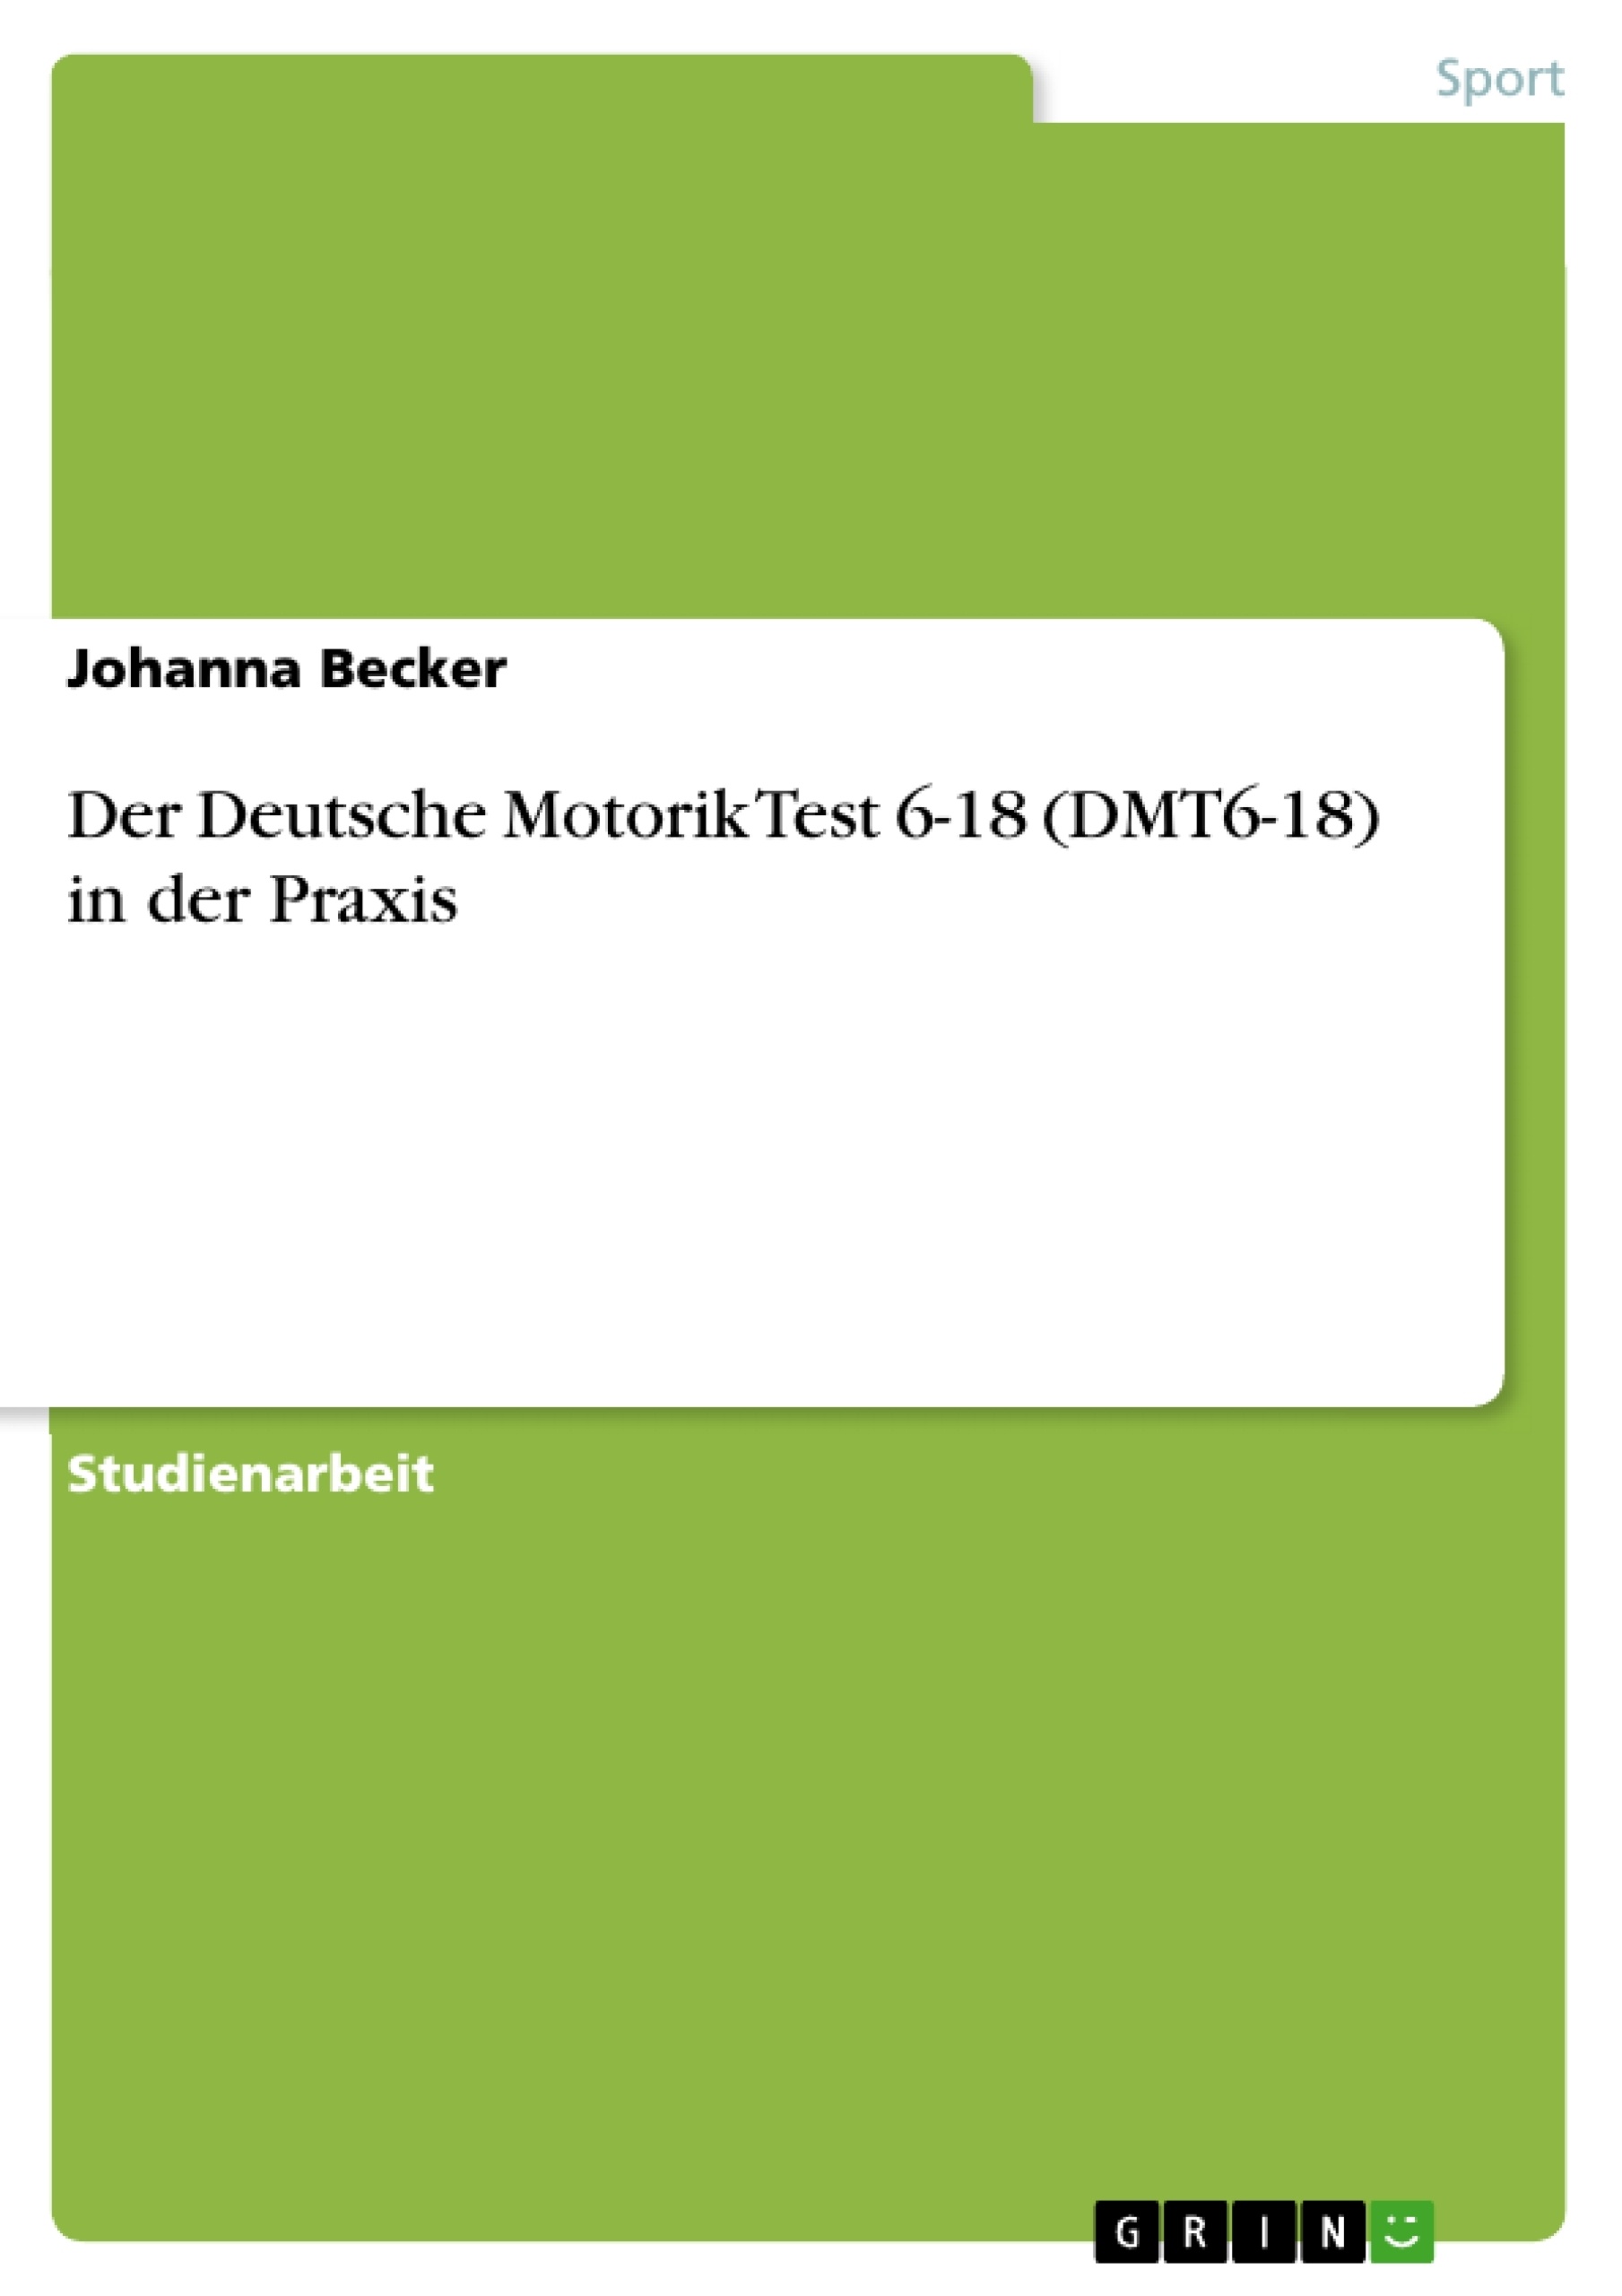 Título: Der Deutsche Motorik Test 6-18 (DMT6-18) in der Praxis